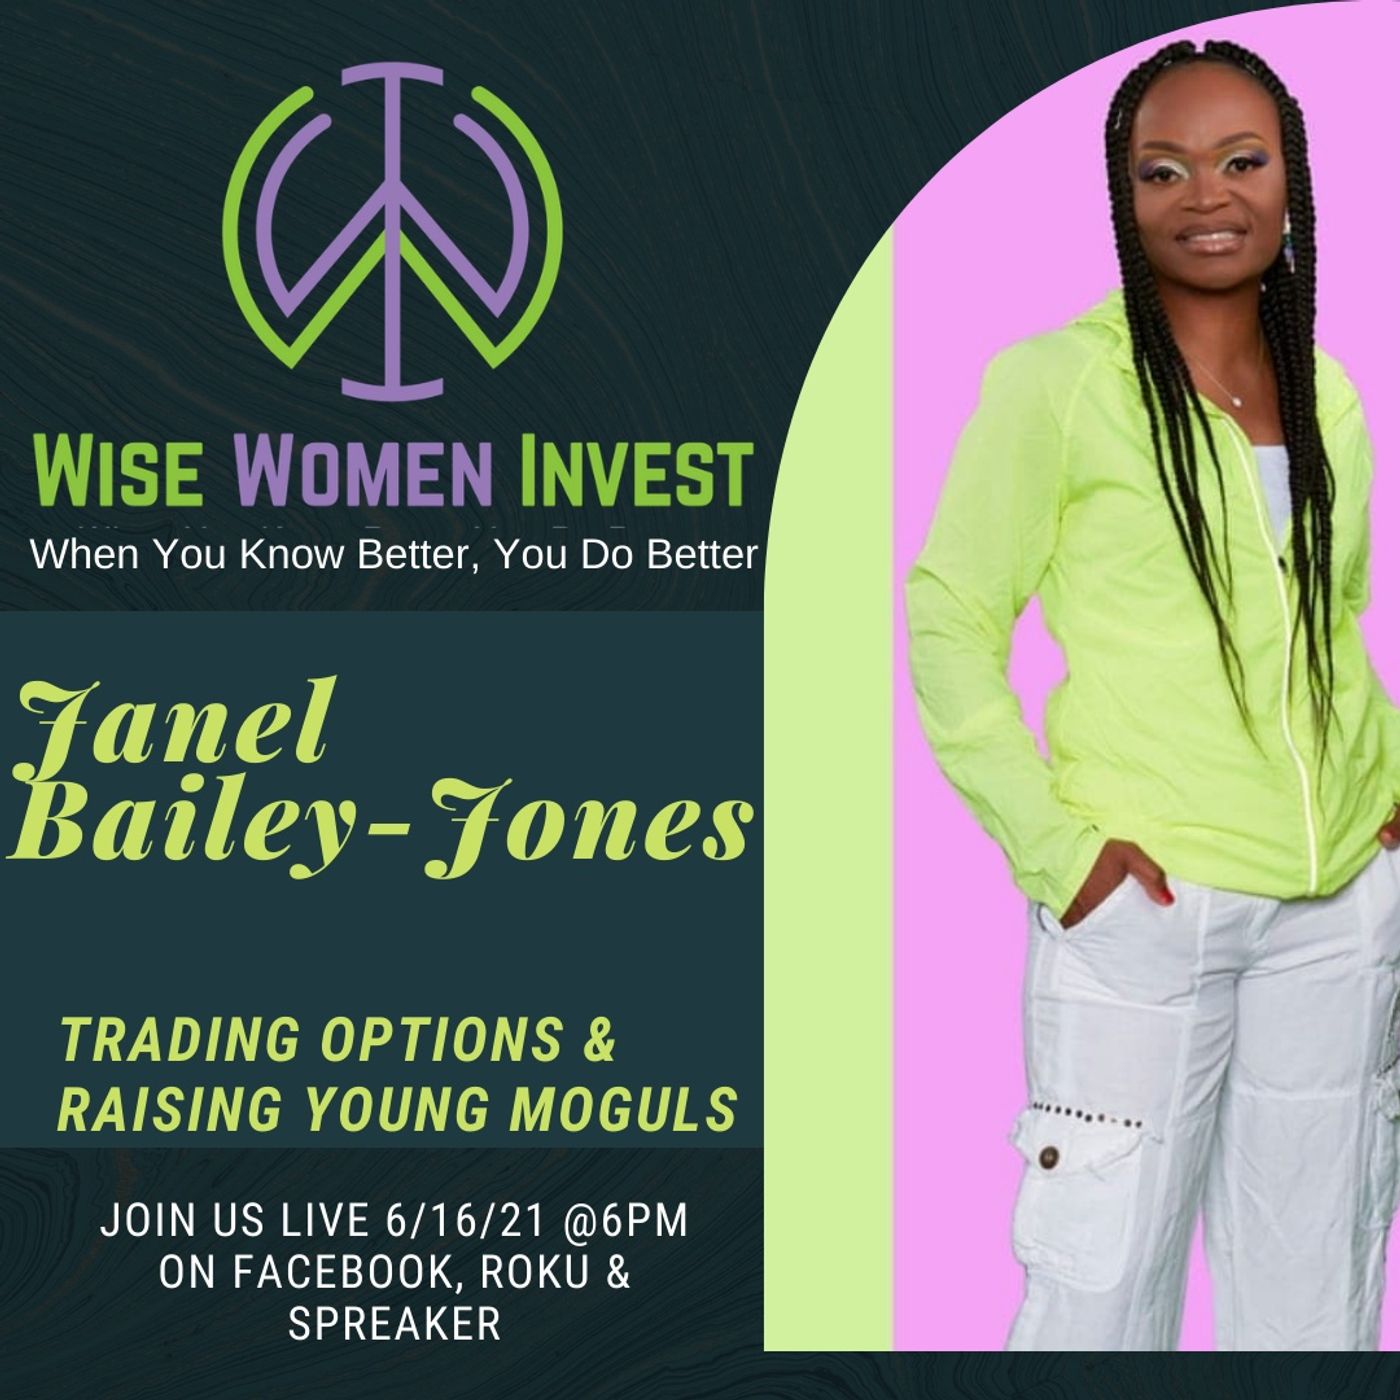 Janel Bailey-Jones Trading Options & Raising Young Moguls